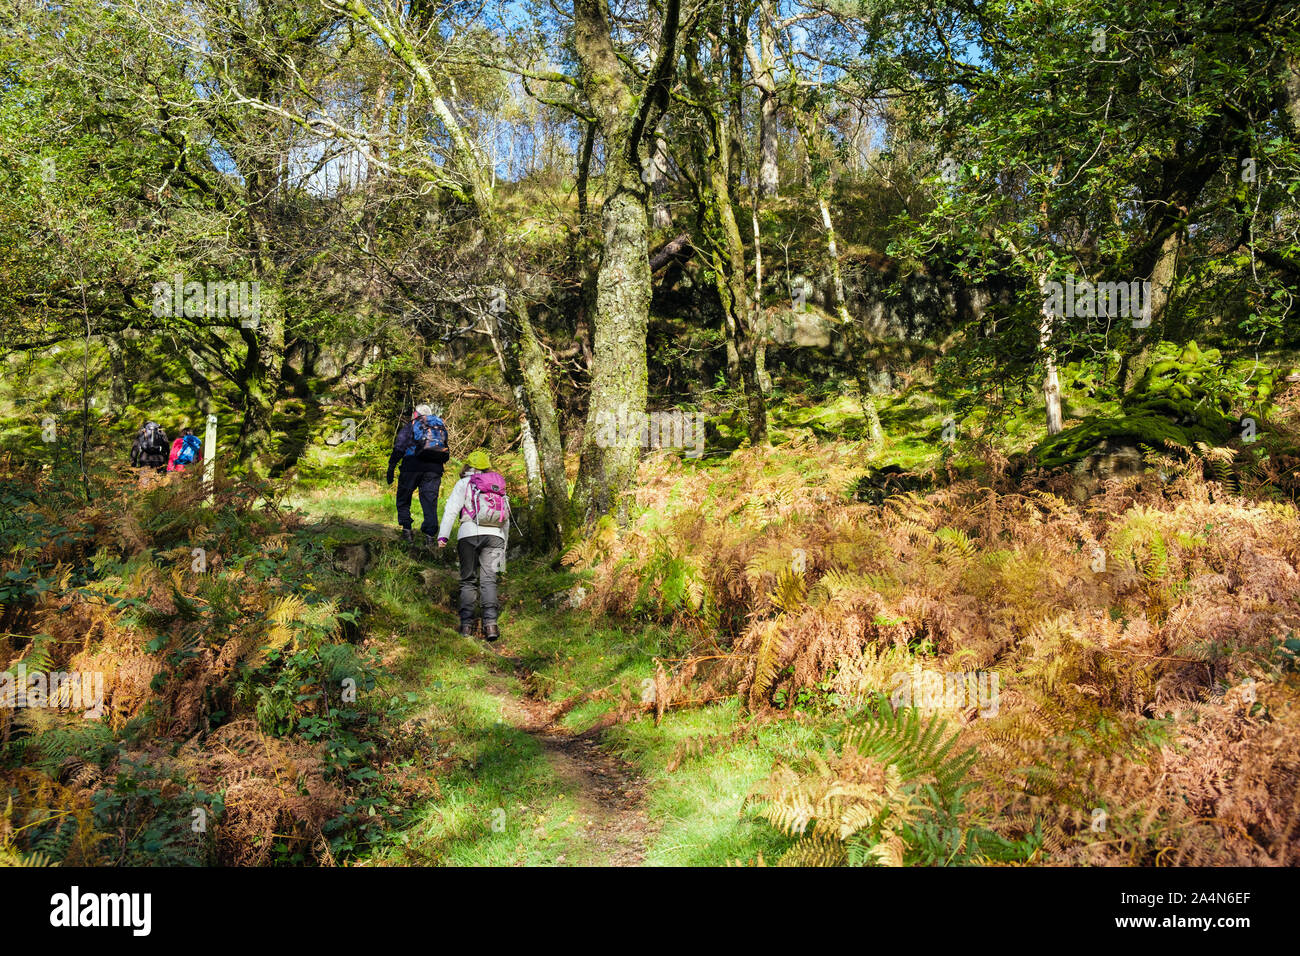 Coed Craflwyn avec woods personnes marchant sur un sentier à travers les arbres forestiers pommelé avec du soleil dans le parc national de Snowdonia en automne. Pays de Galles UK Banque D'Images